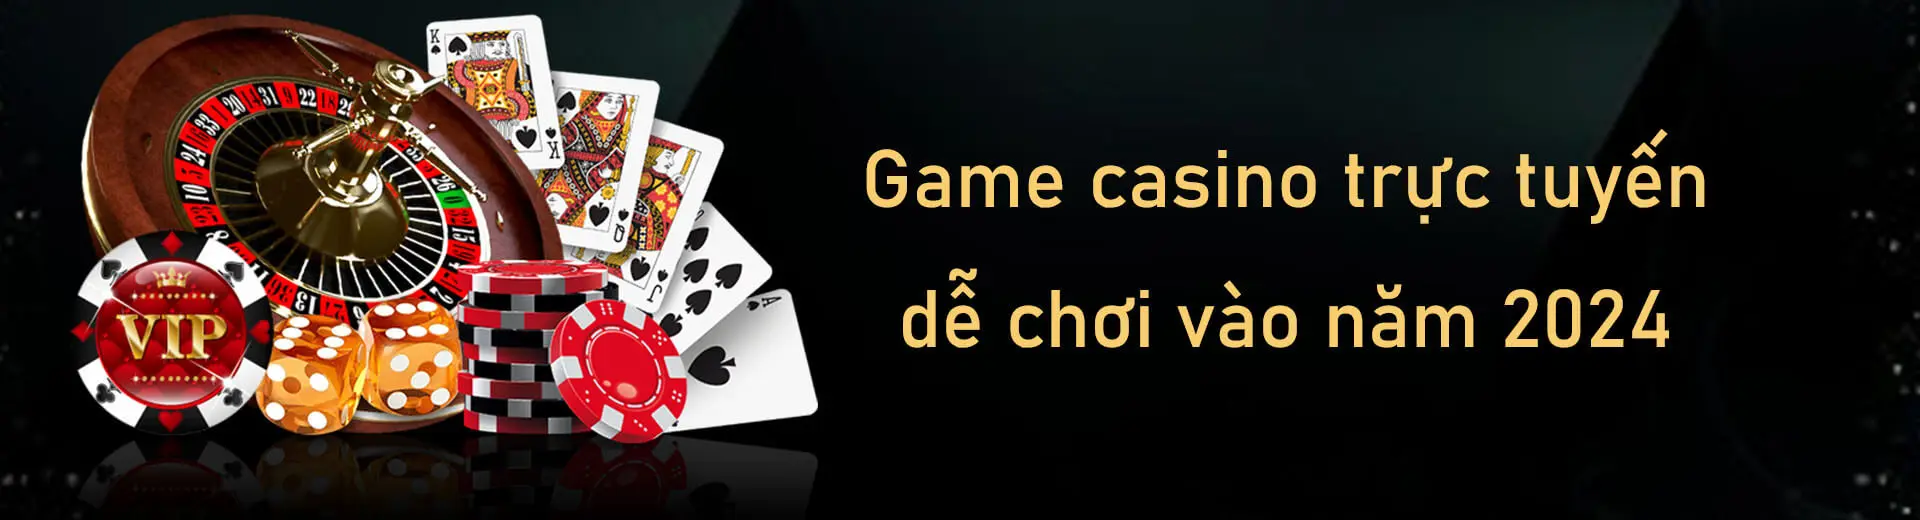 Game casino trực tuyến dễ chơi vào năm 2024